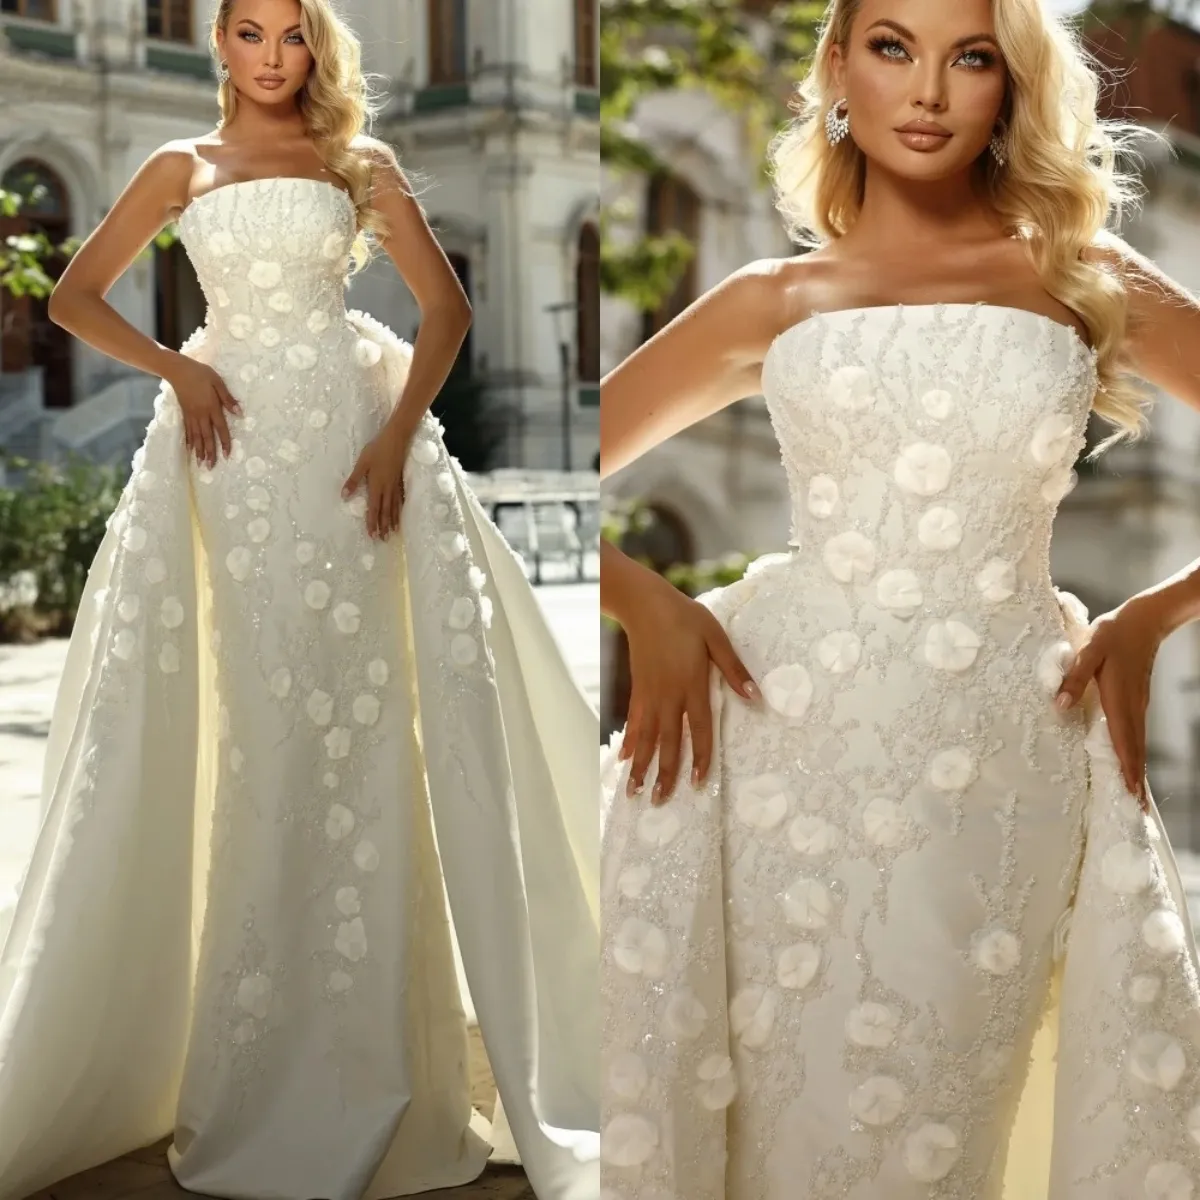 Romantische trägerlose Hochzeitskleider 3D Applique Pailletten Meerjungfrau Brautkleider mit Überträgen maßgeschneiderte Brautkleid Vestidos de Novia